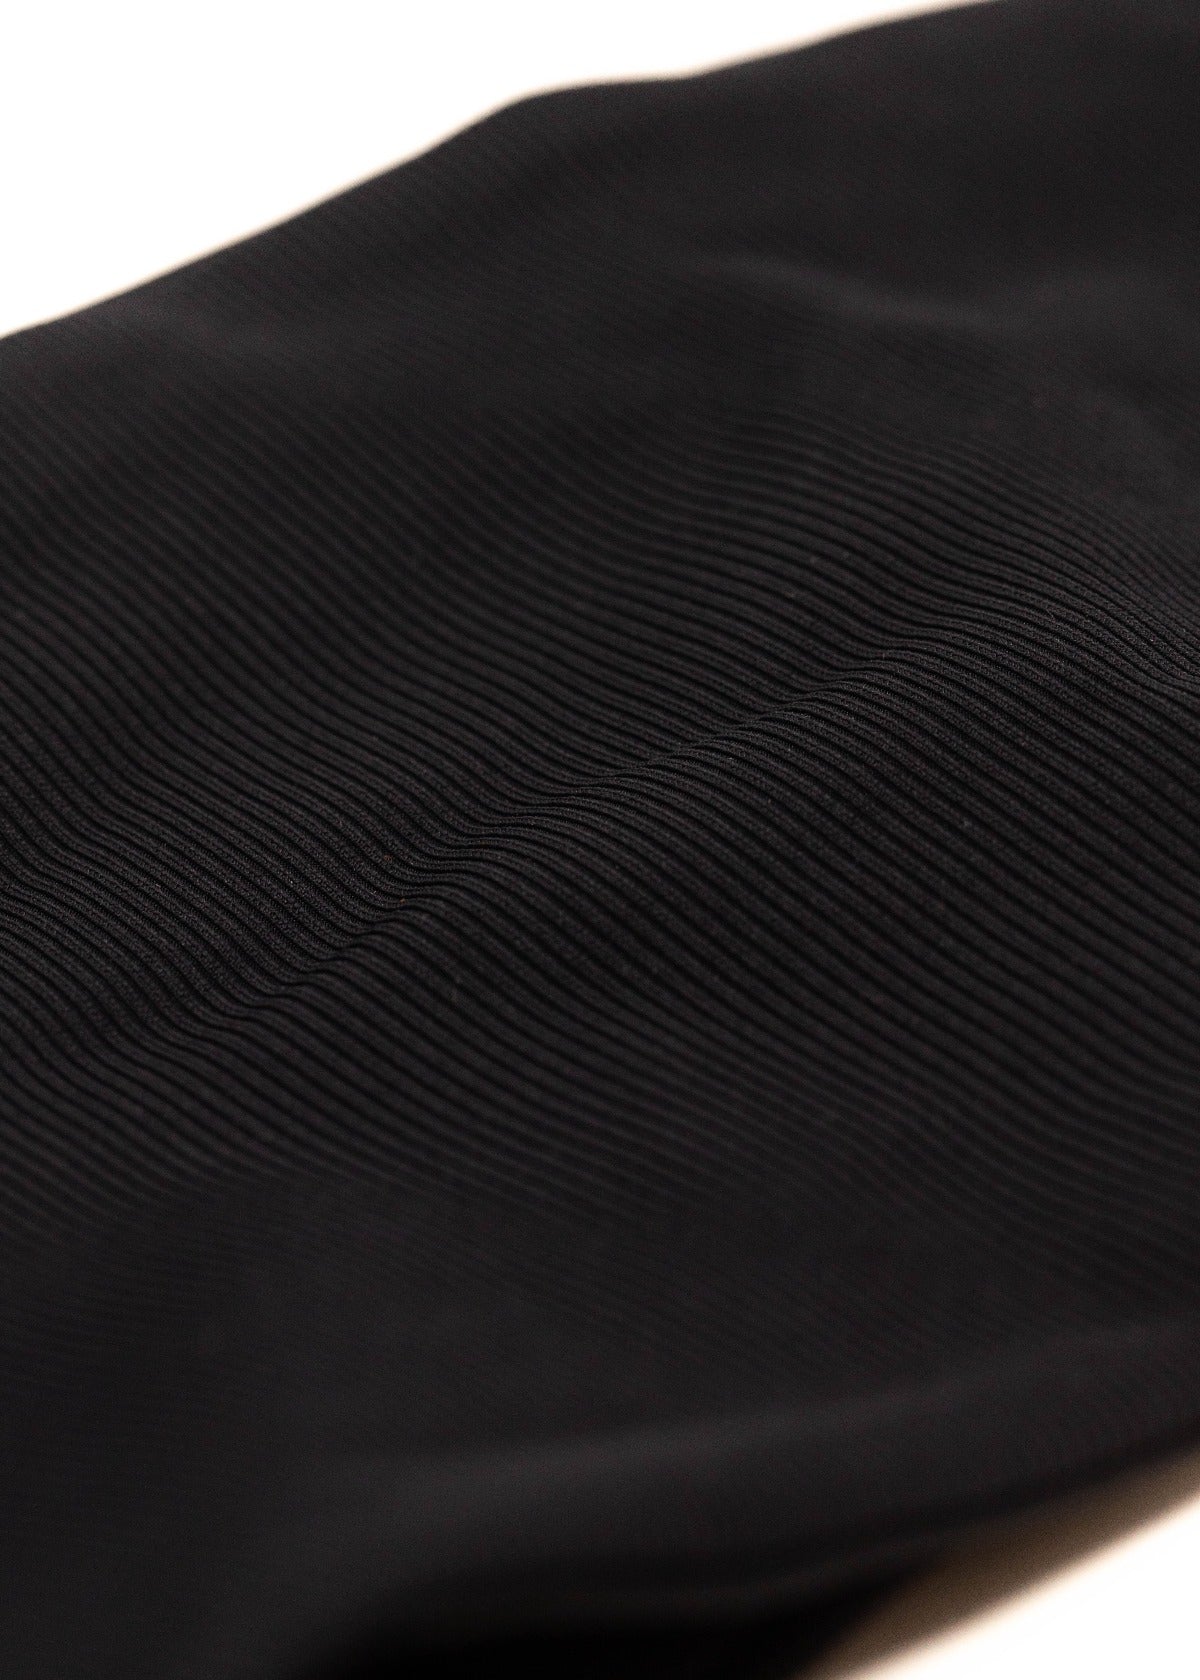 Black Sustainable Swimwear Fabric